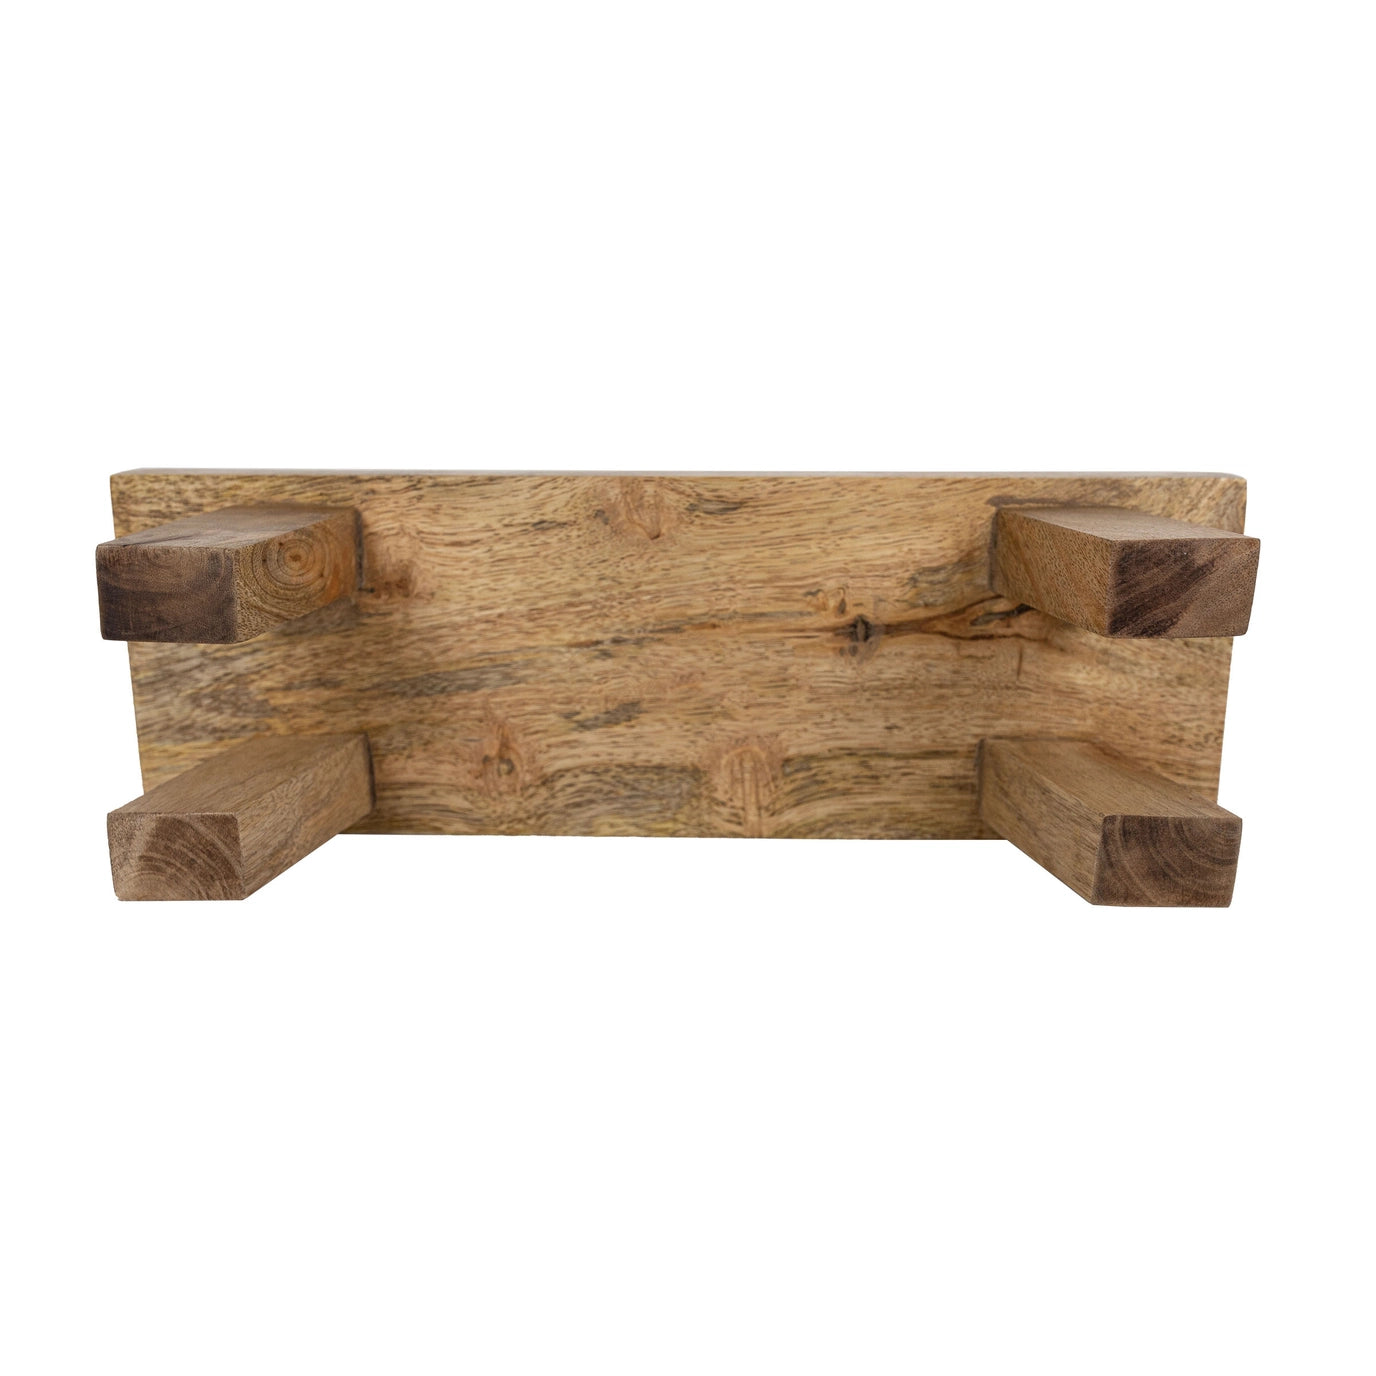 Rectangle Wooden Stool Riser